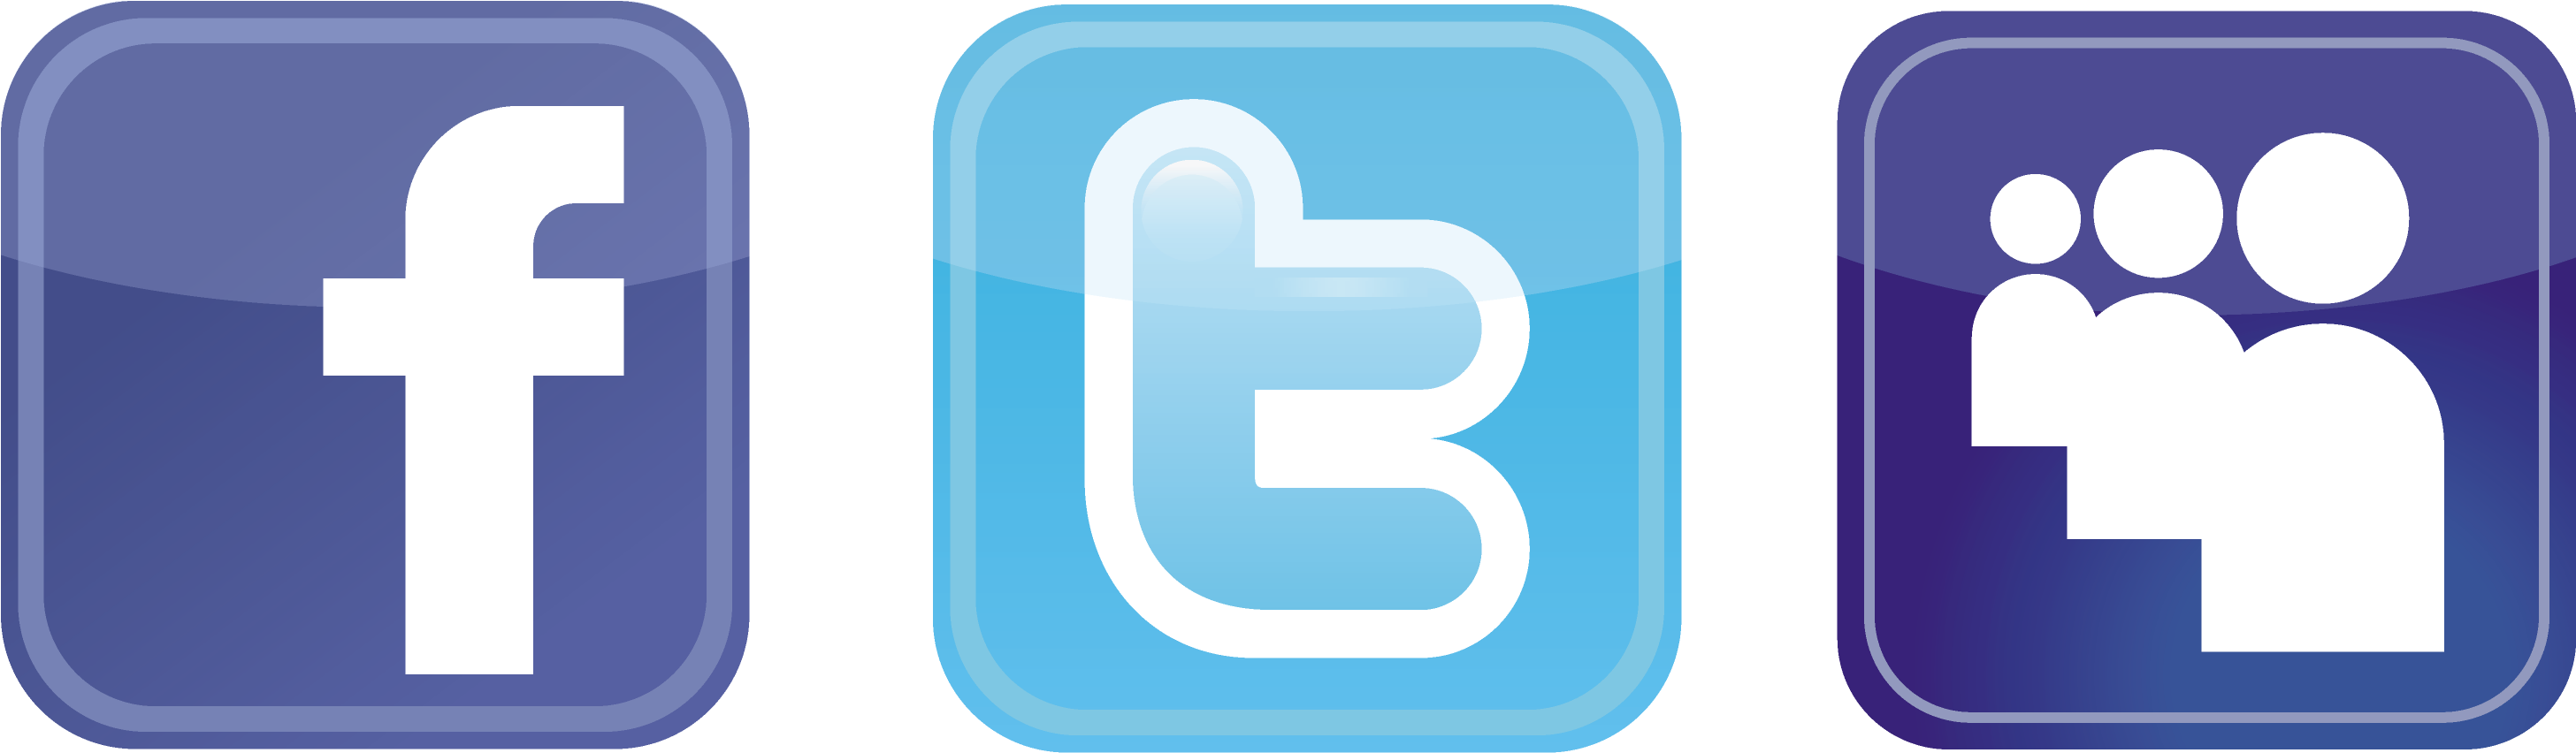 Facebook Twitter Logo Clipart Best Qwbnmj Clipart - Facebook And Twitter Logos Png (3323x1668), Png Download